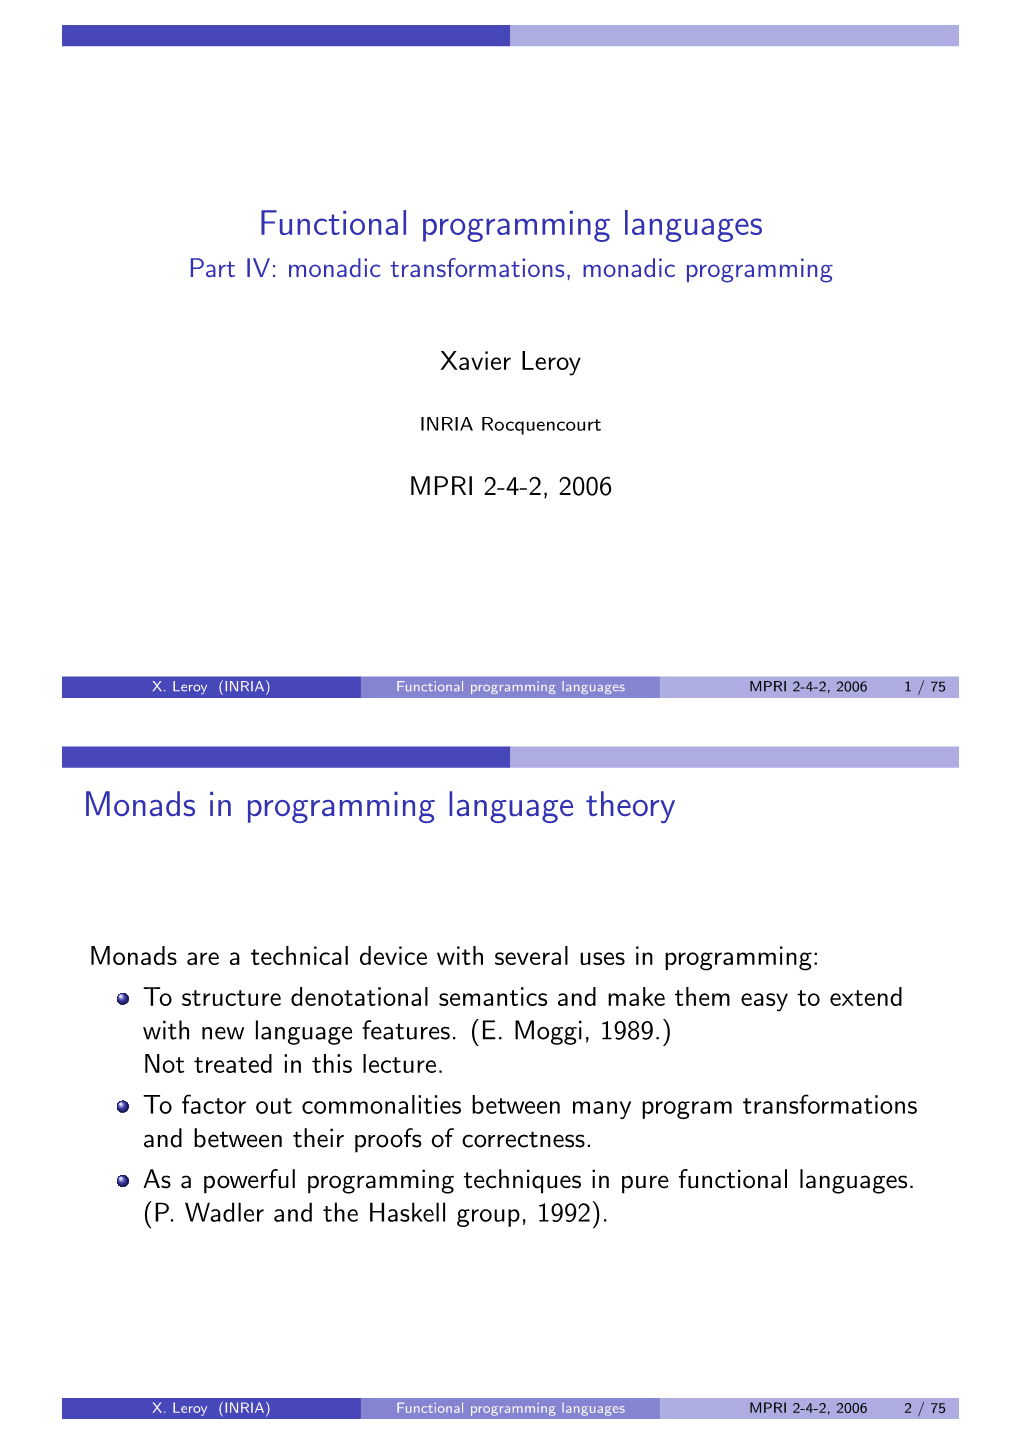 Functional Programming Languages Part IV: Monadic Transformations, Monadic Programming